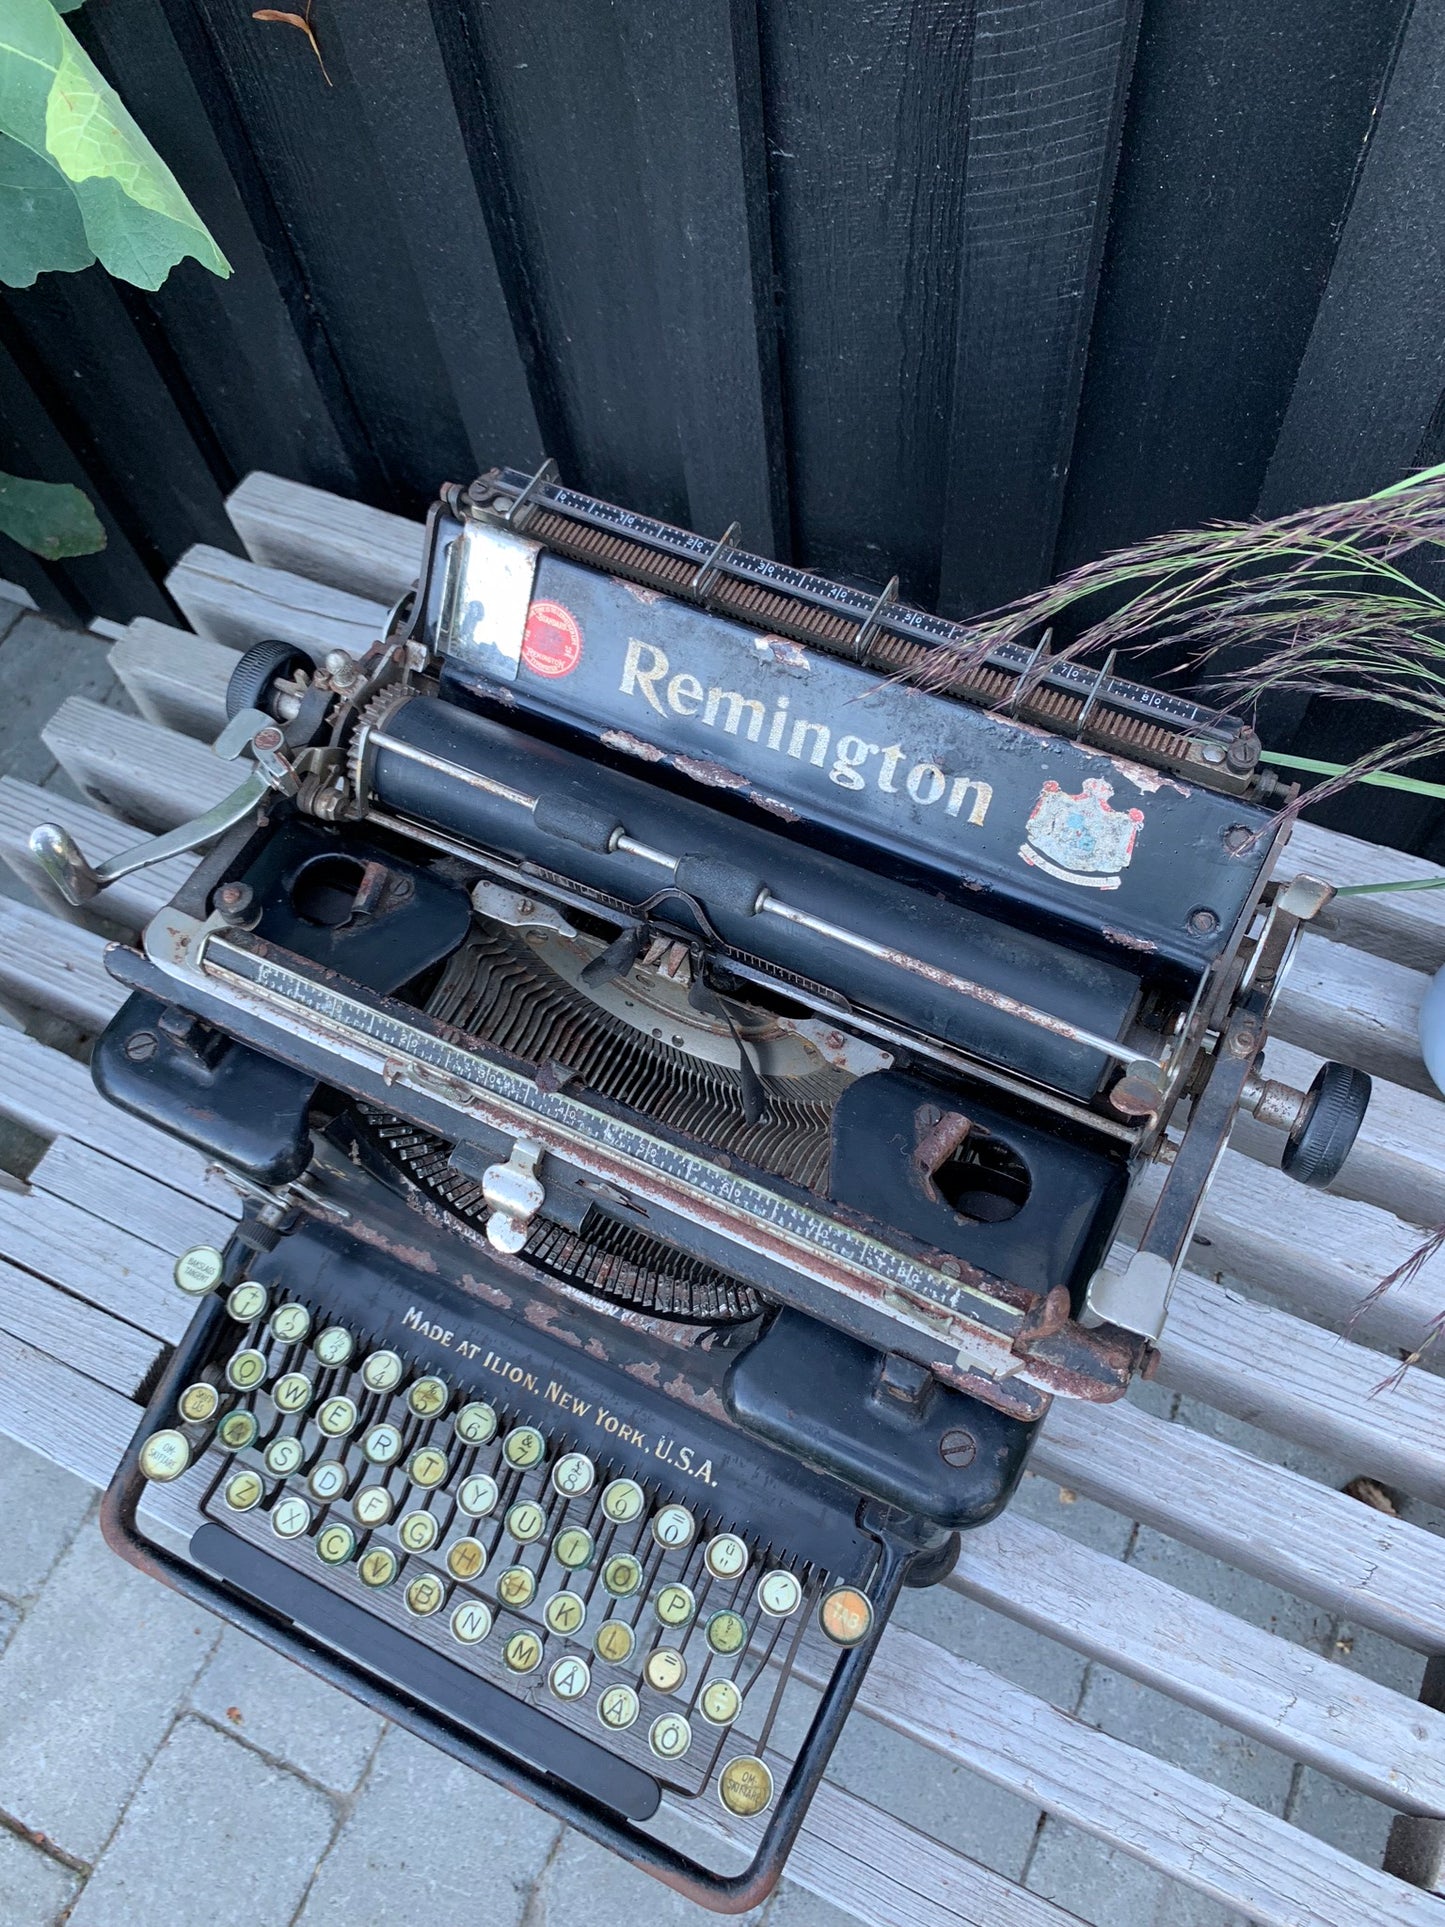 Remington skrivmaskin med vacker patina